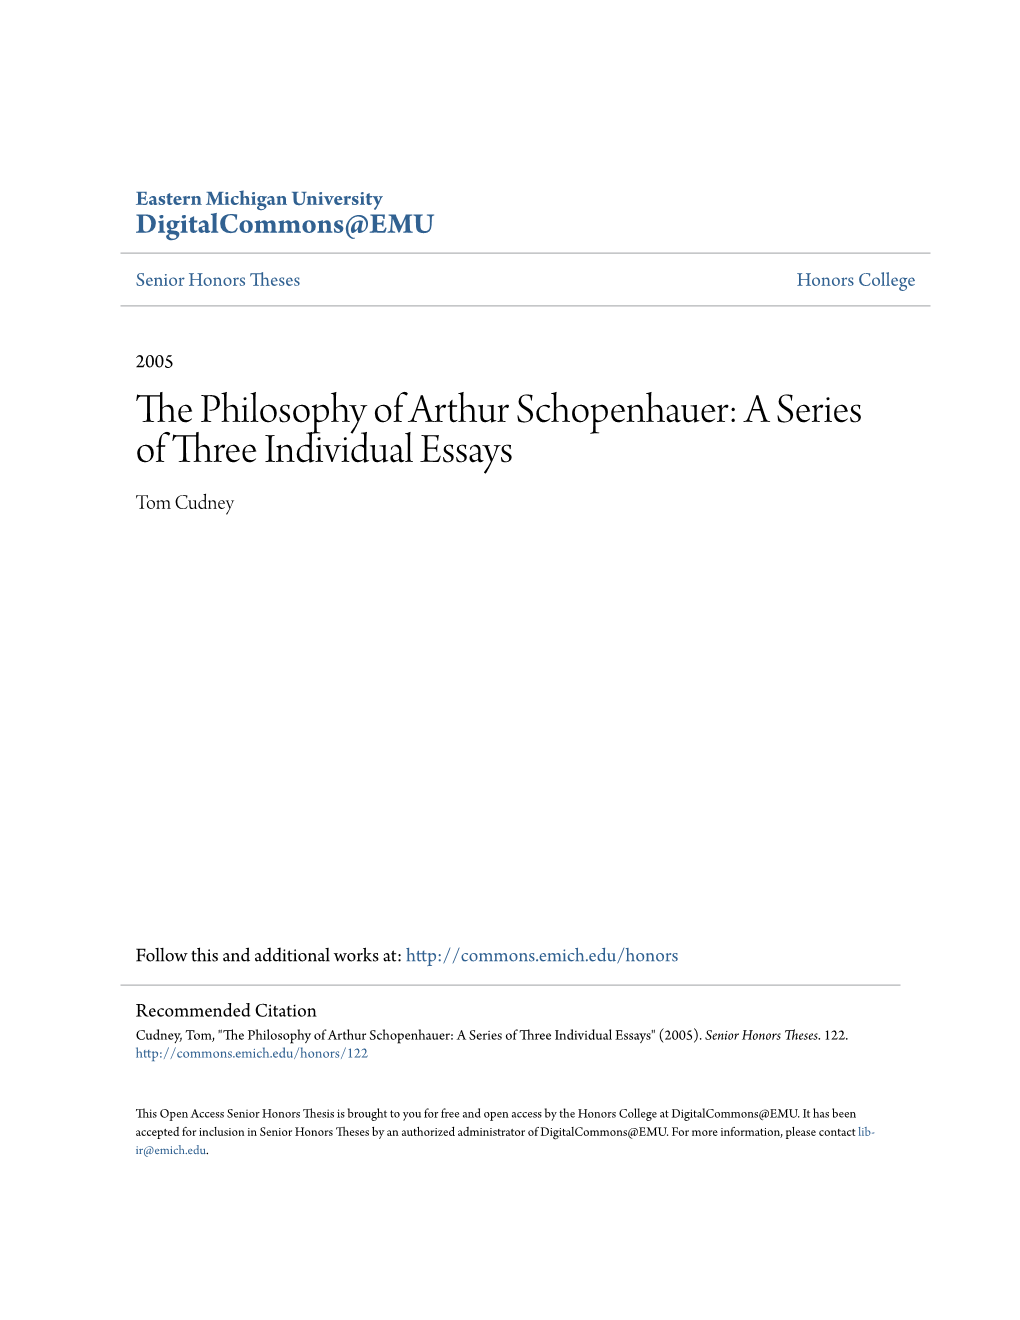 The Philosophy of Arthur Schopenhauer